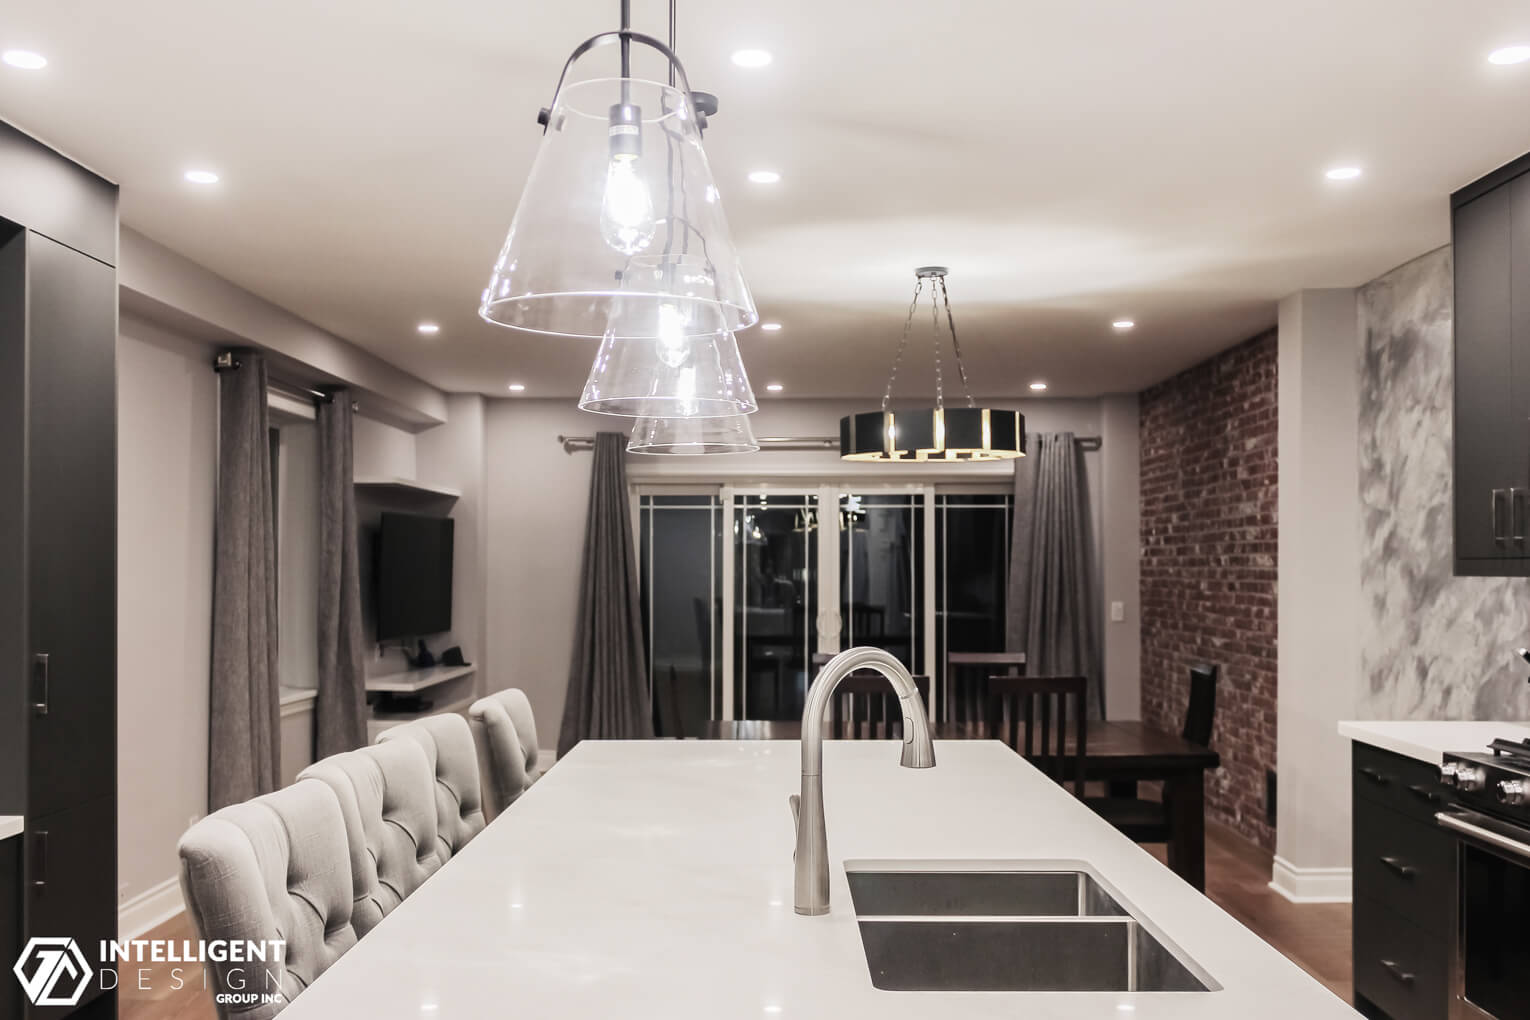 Luxury Kitchen Interior Design